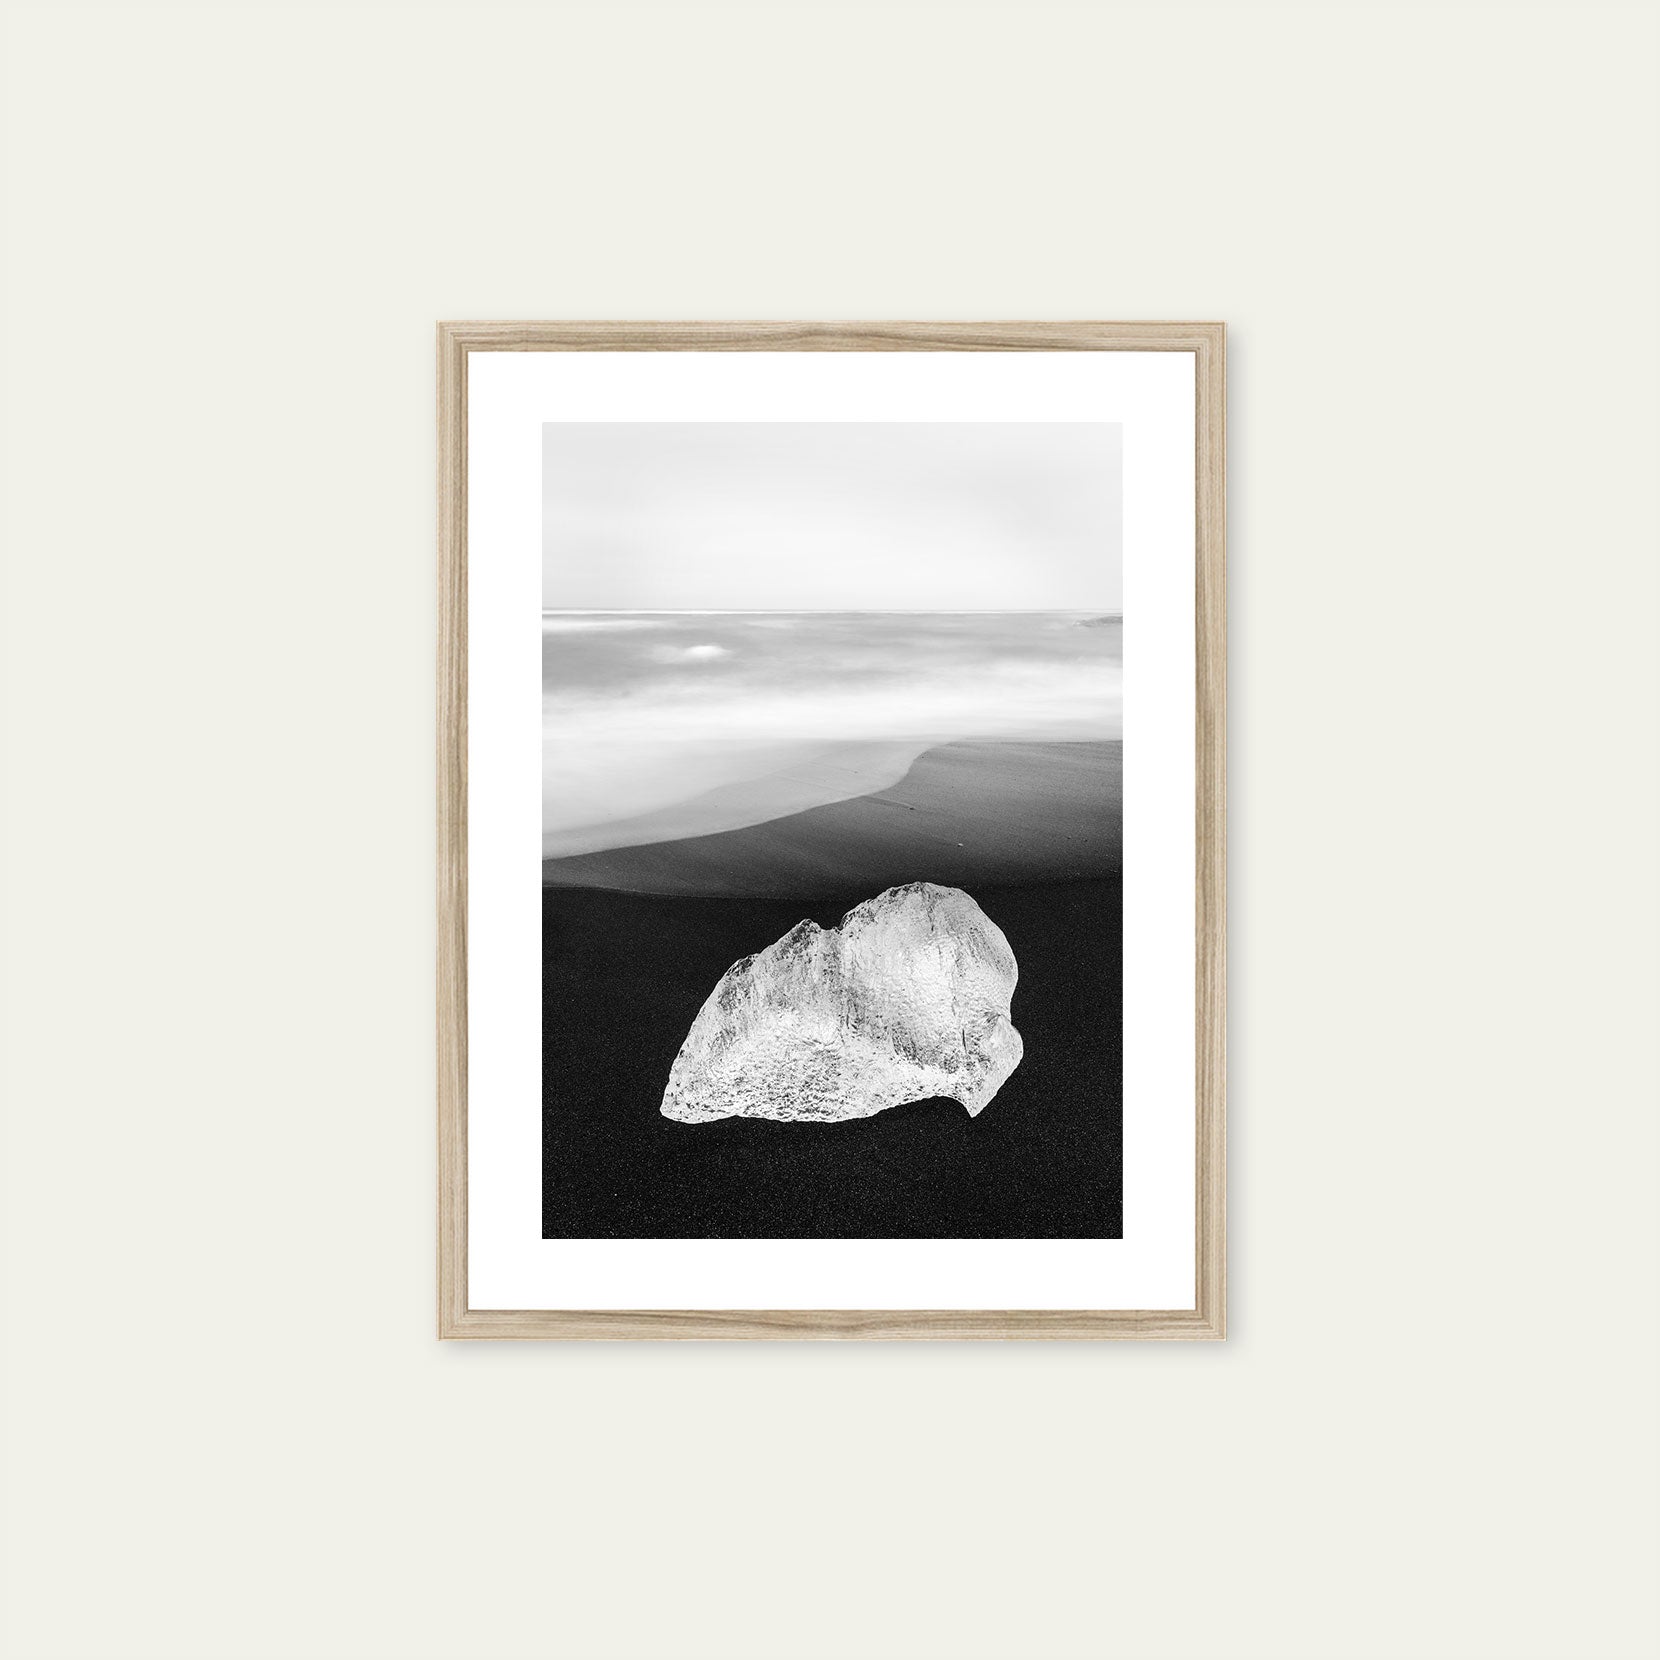 A wood framed print of a ice on black sand beach